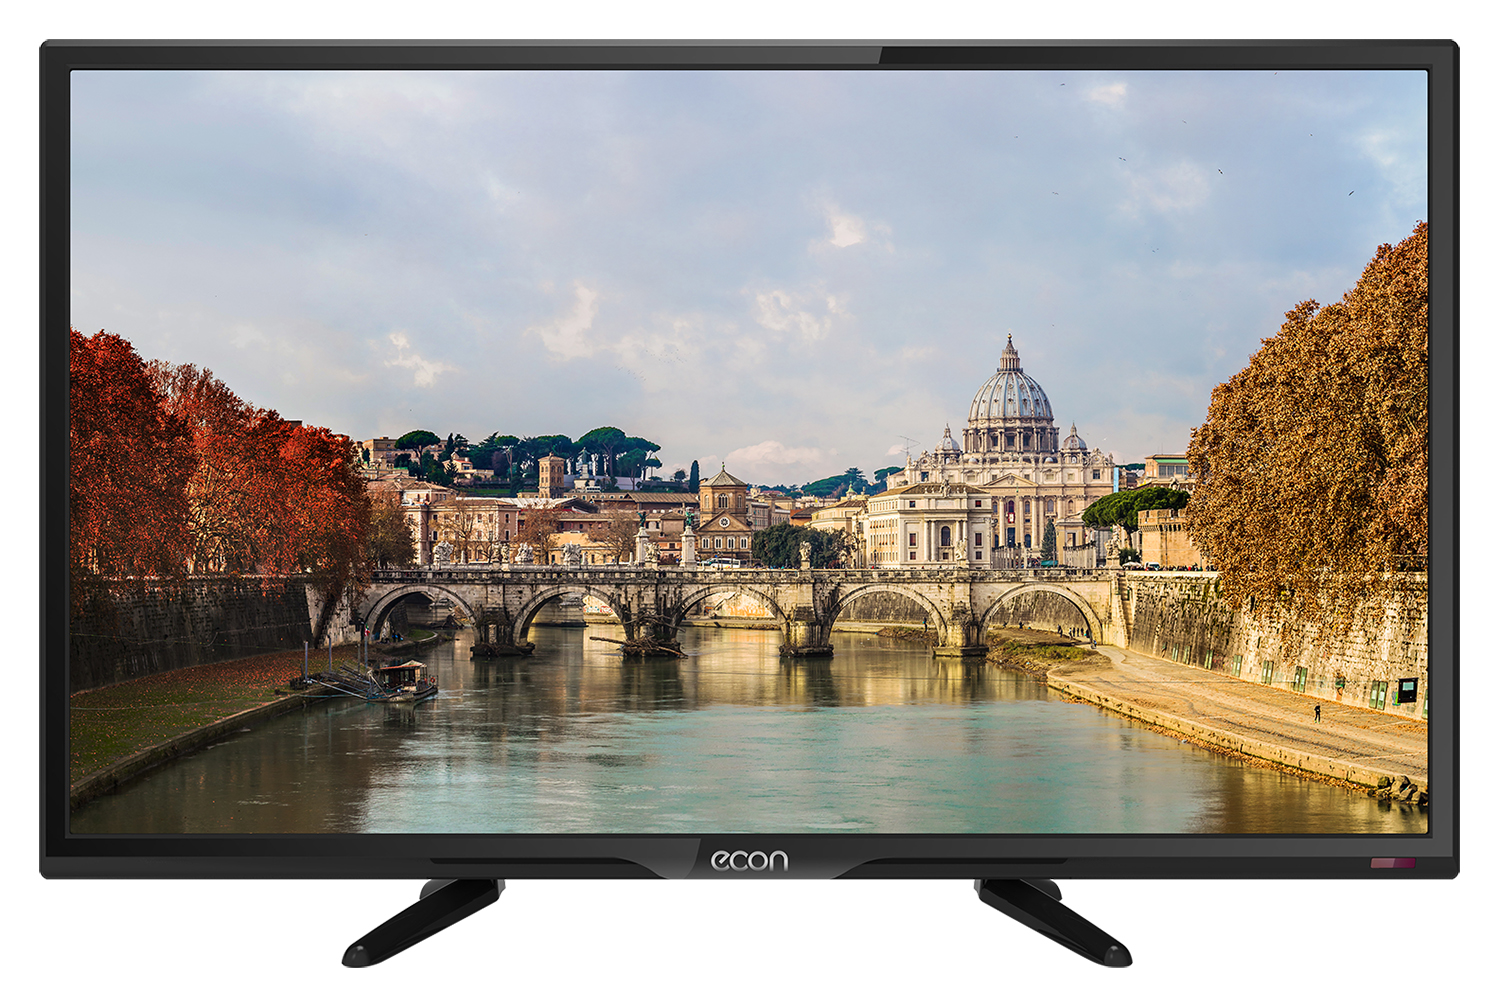 Картинка Телевизор ECON EX-24HT003B по разумной цене купить в интернет магазине mall.su